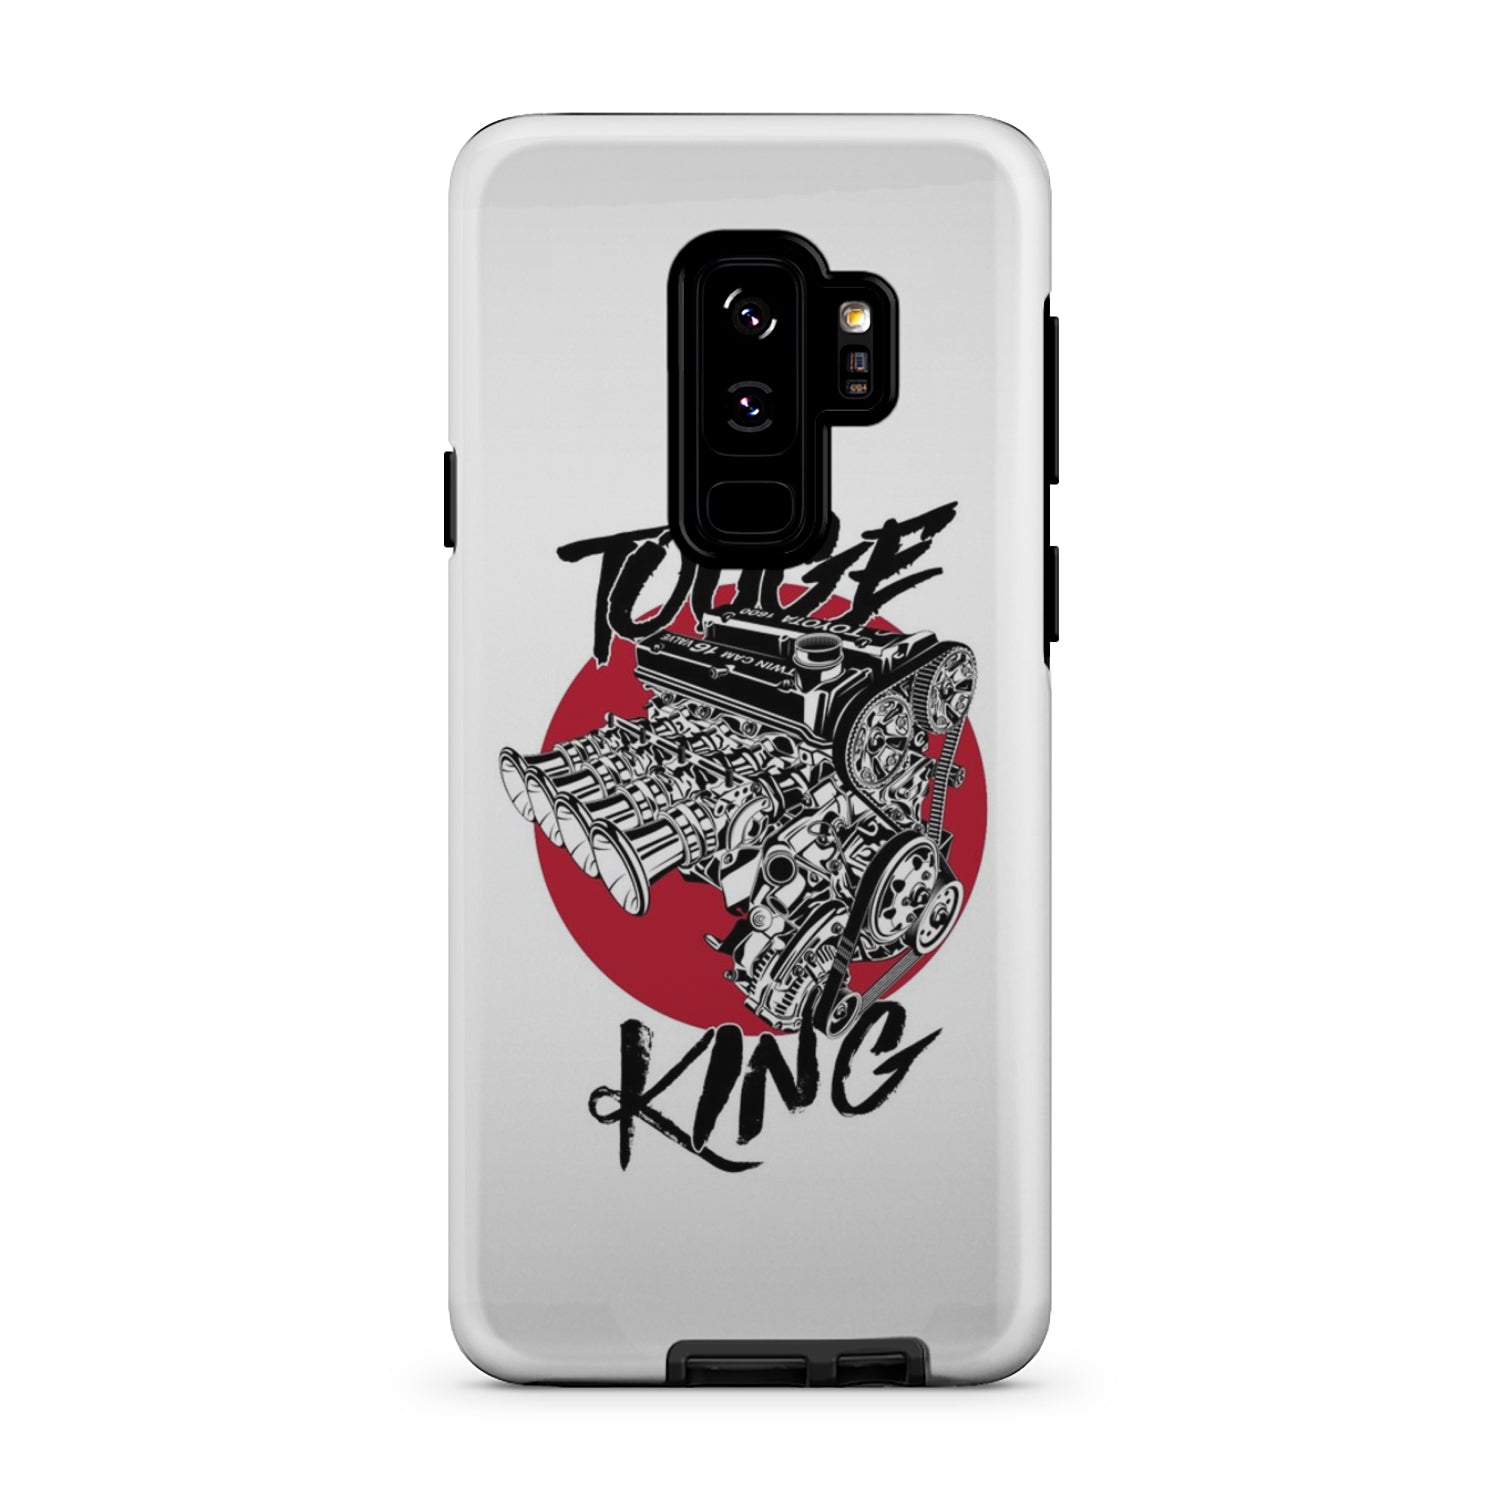 Touge King Phone Case